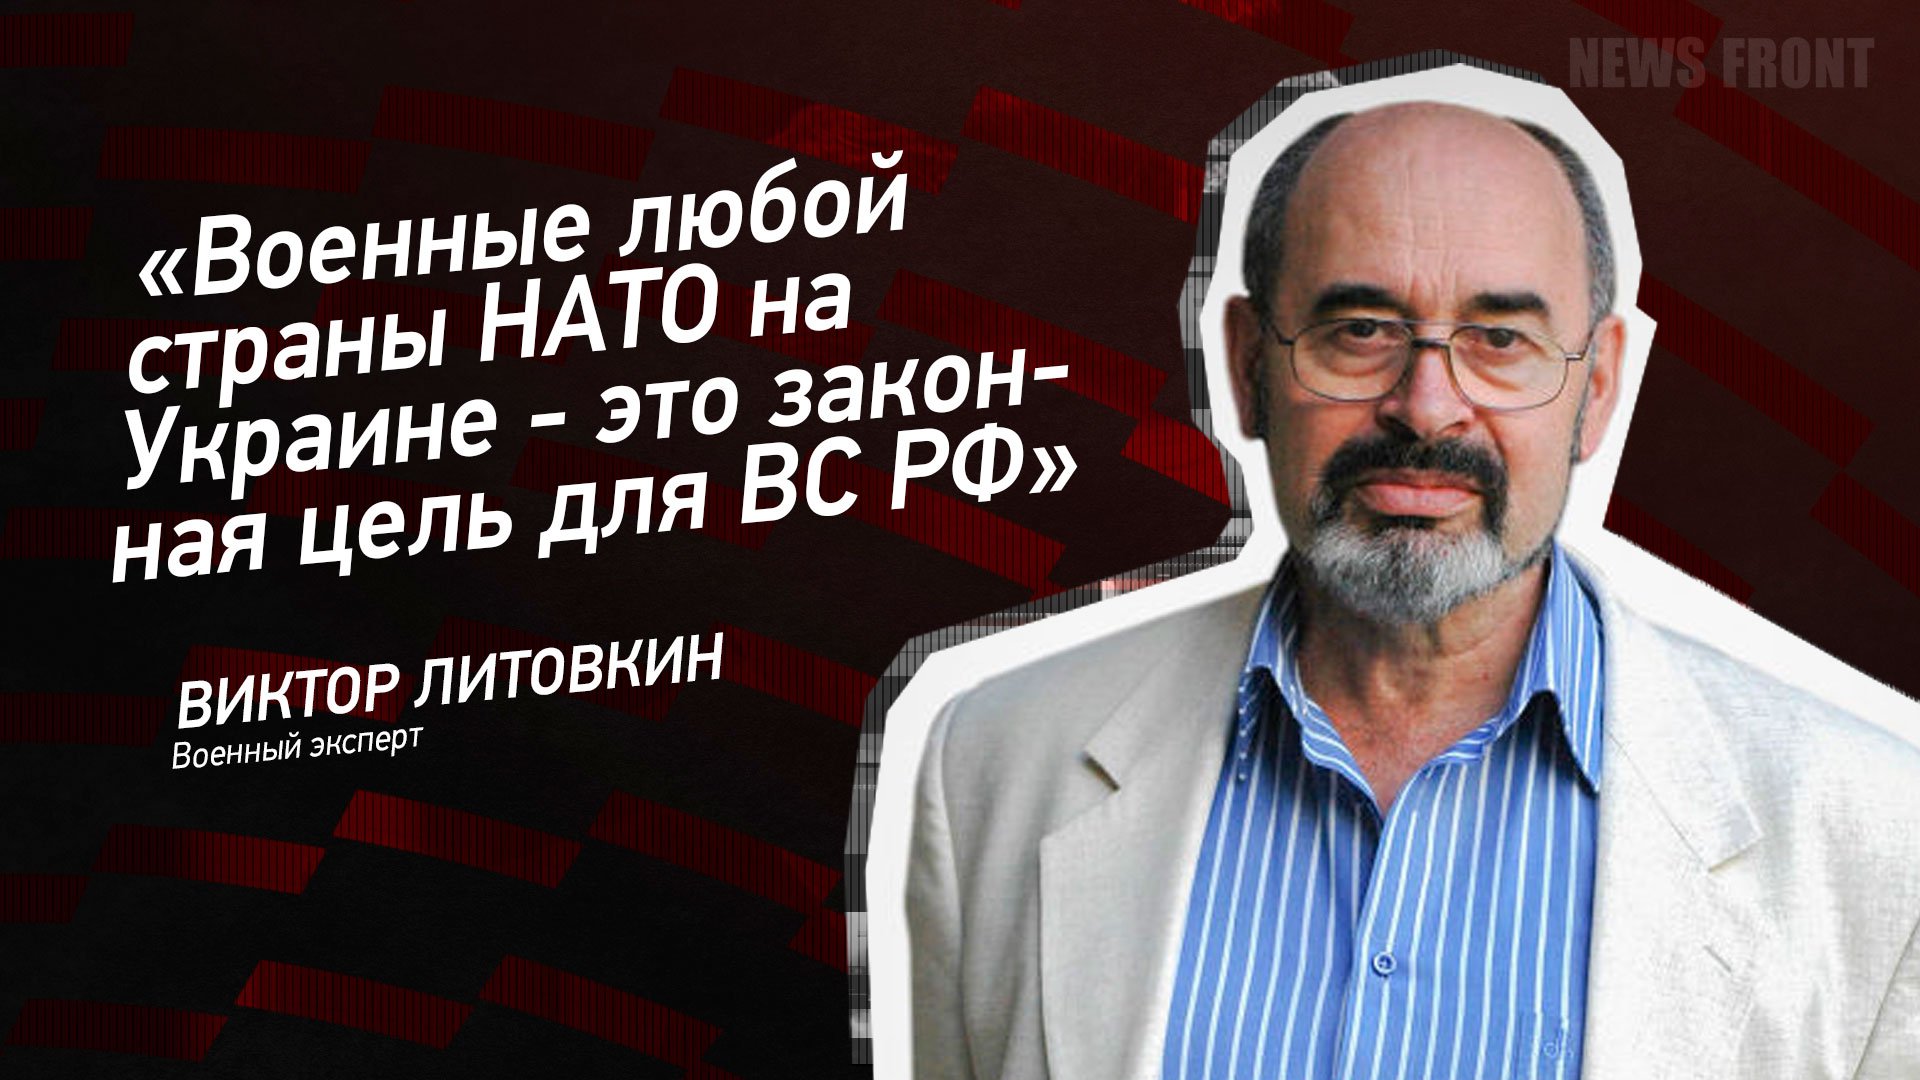 "Военные любой страны НАТО на Украине - это законная цель для ВС РФ" - Виктор Литовкин